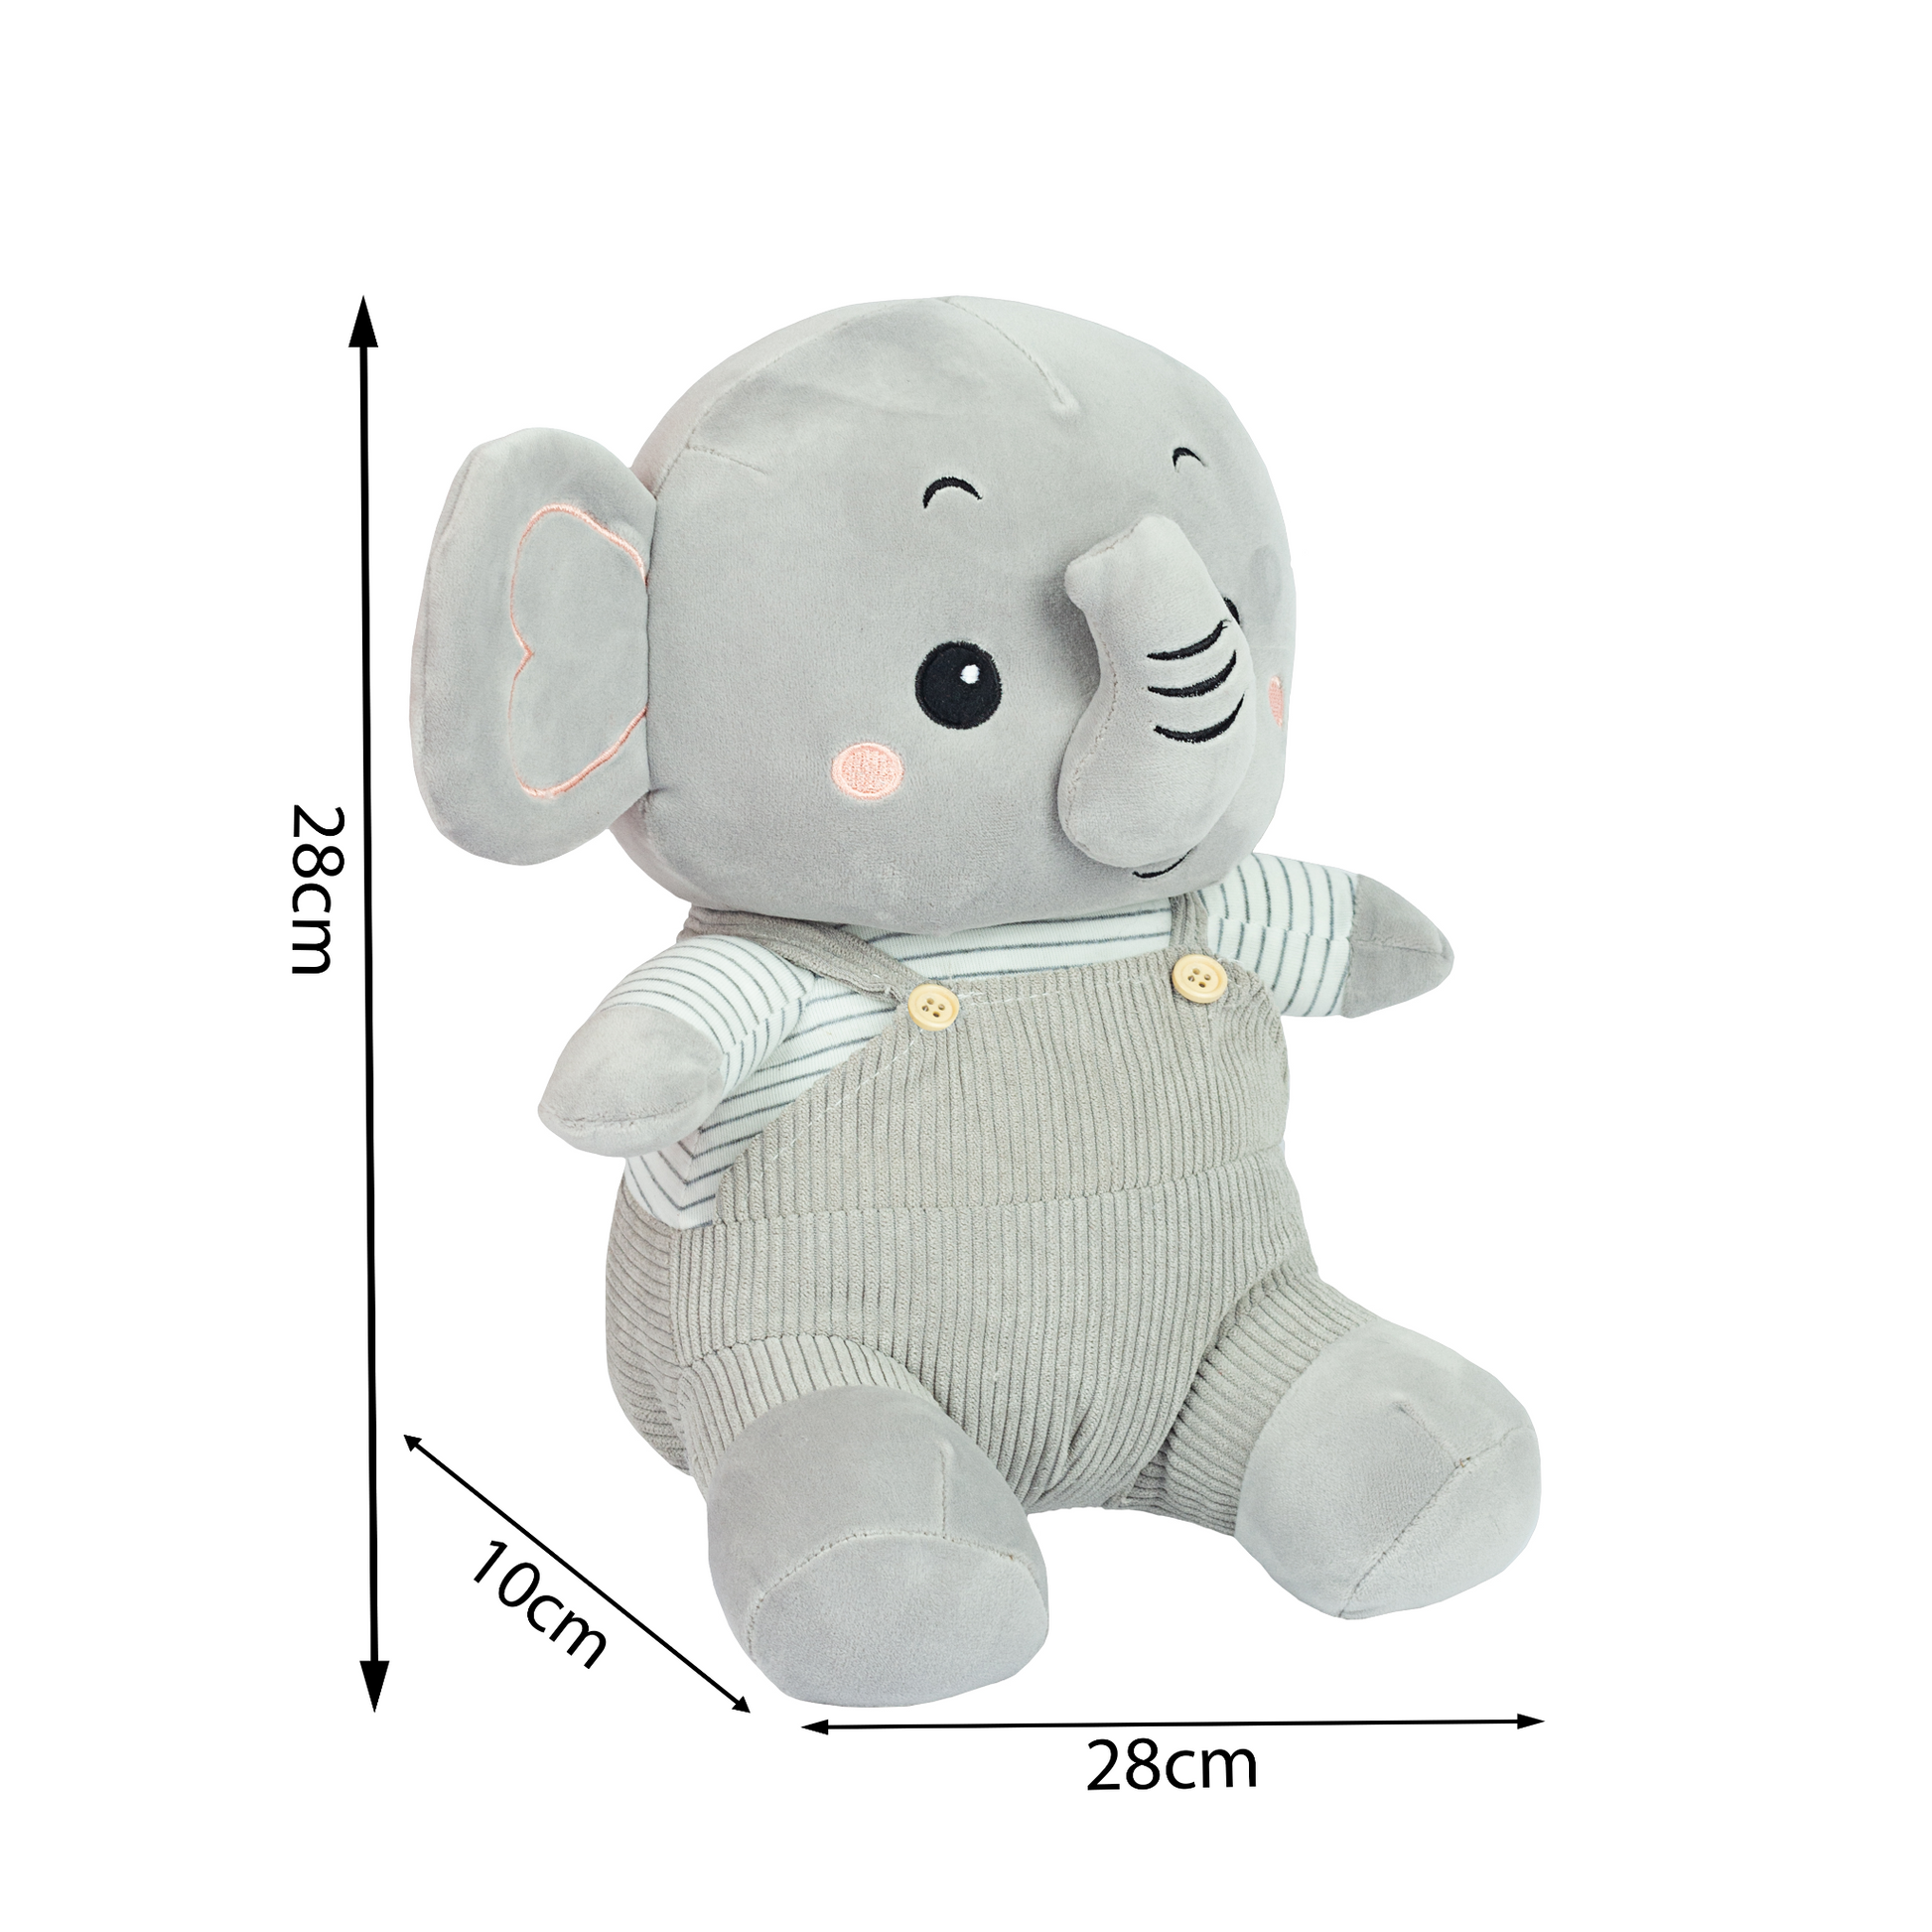 elephant soft toy